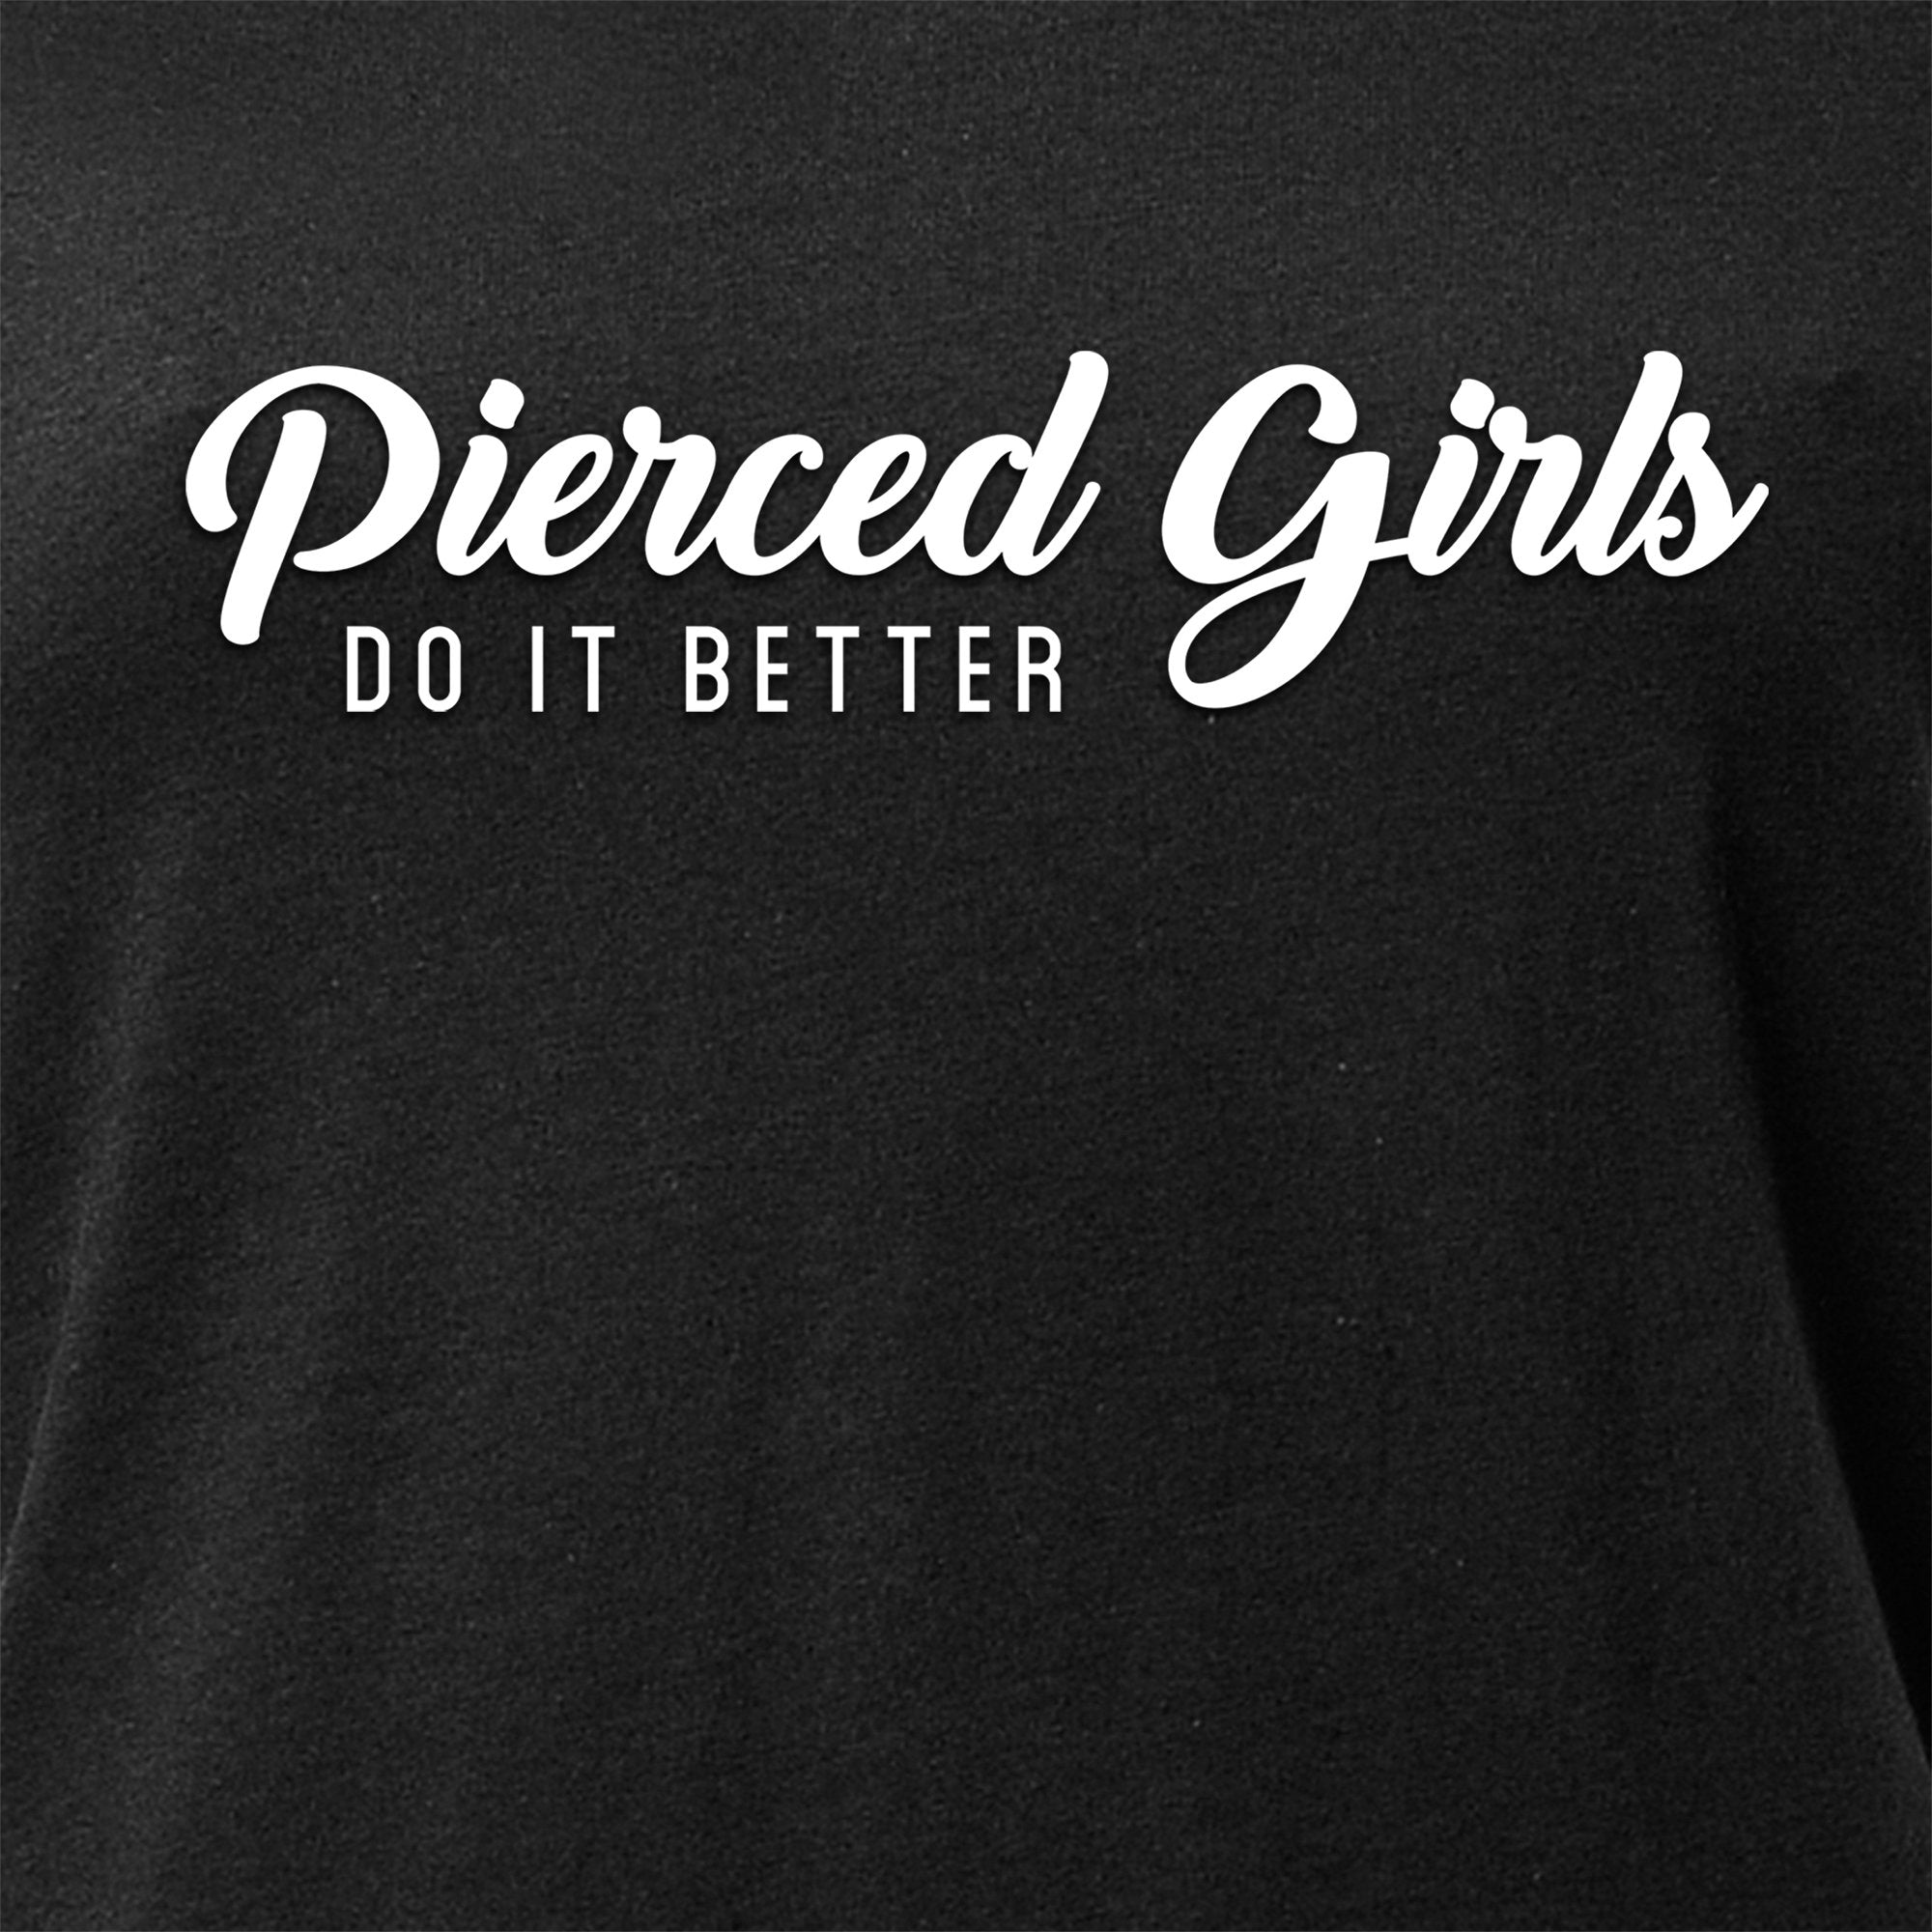 Pierced Girls Do It Better Tapered V-Neck Tee Shirt